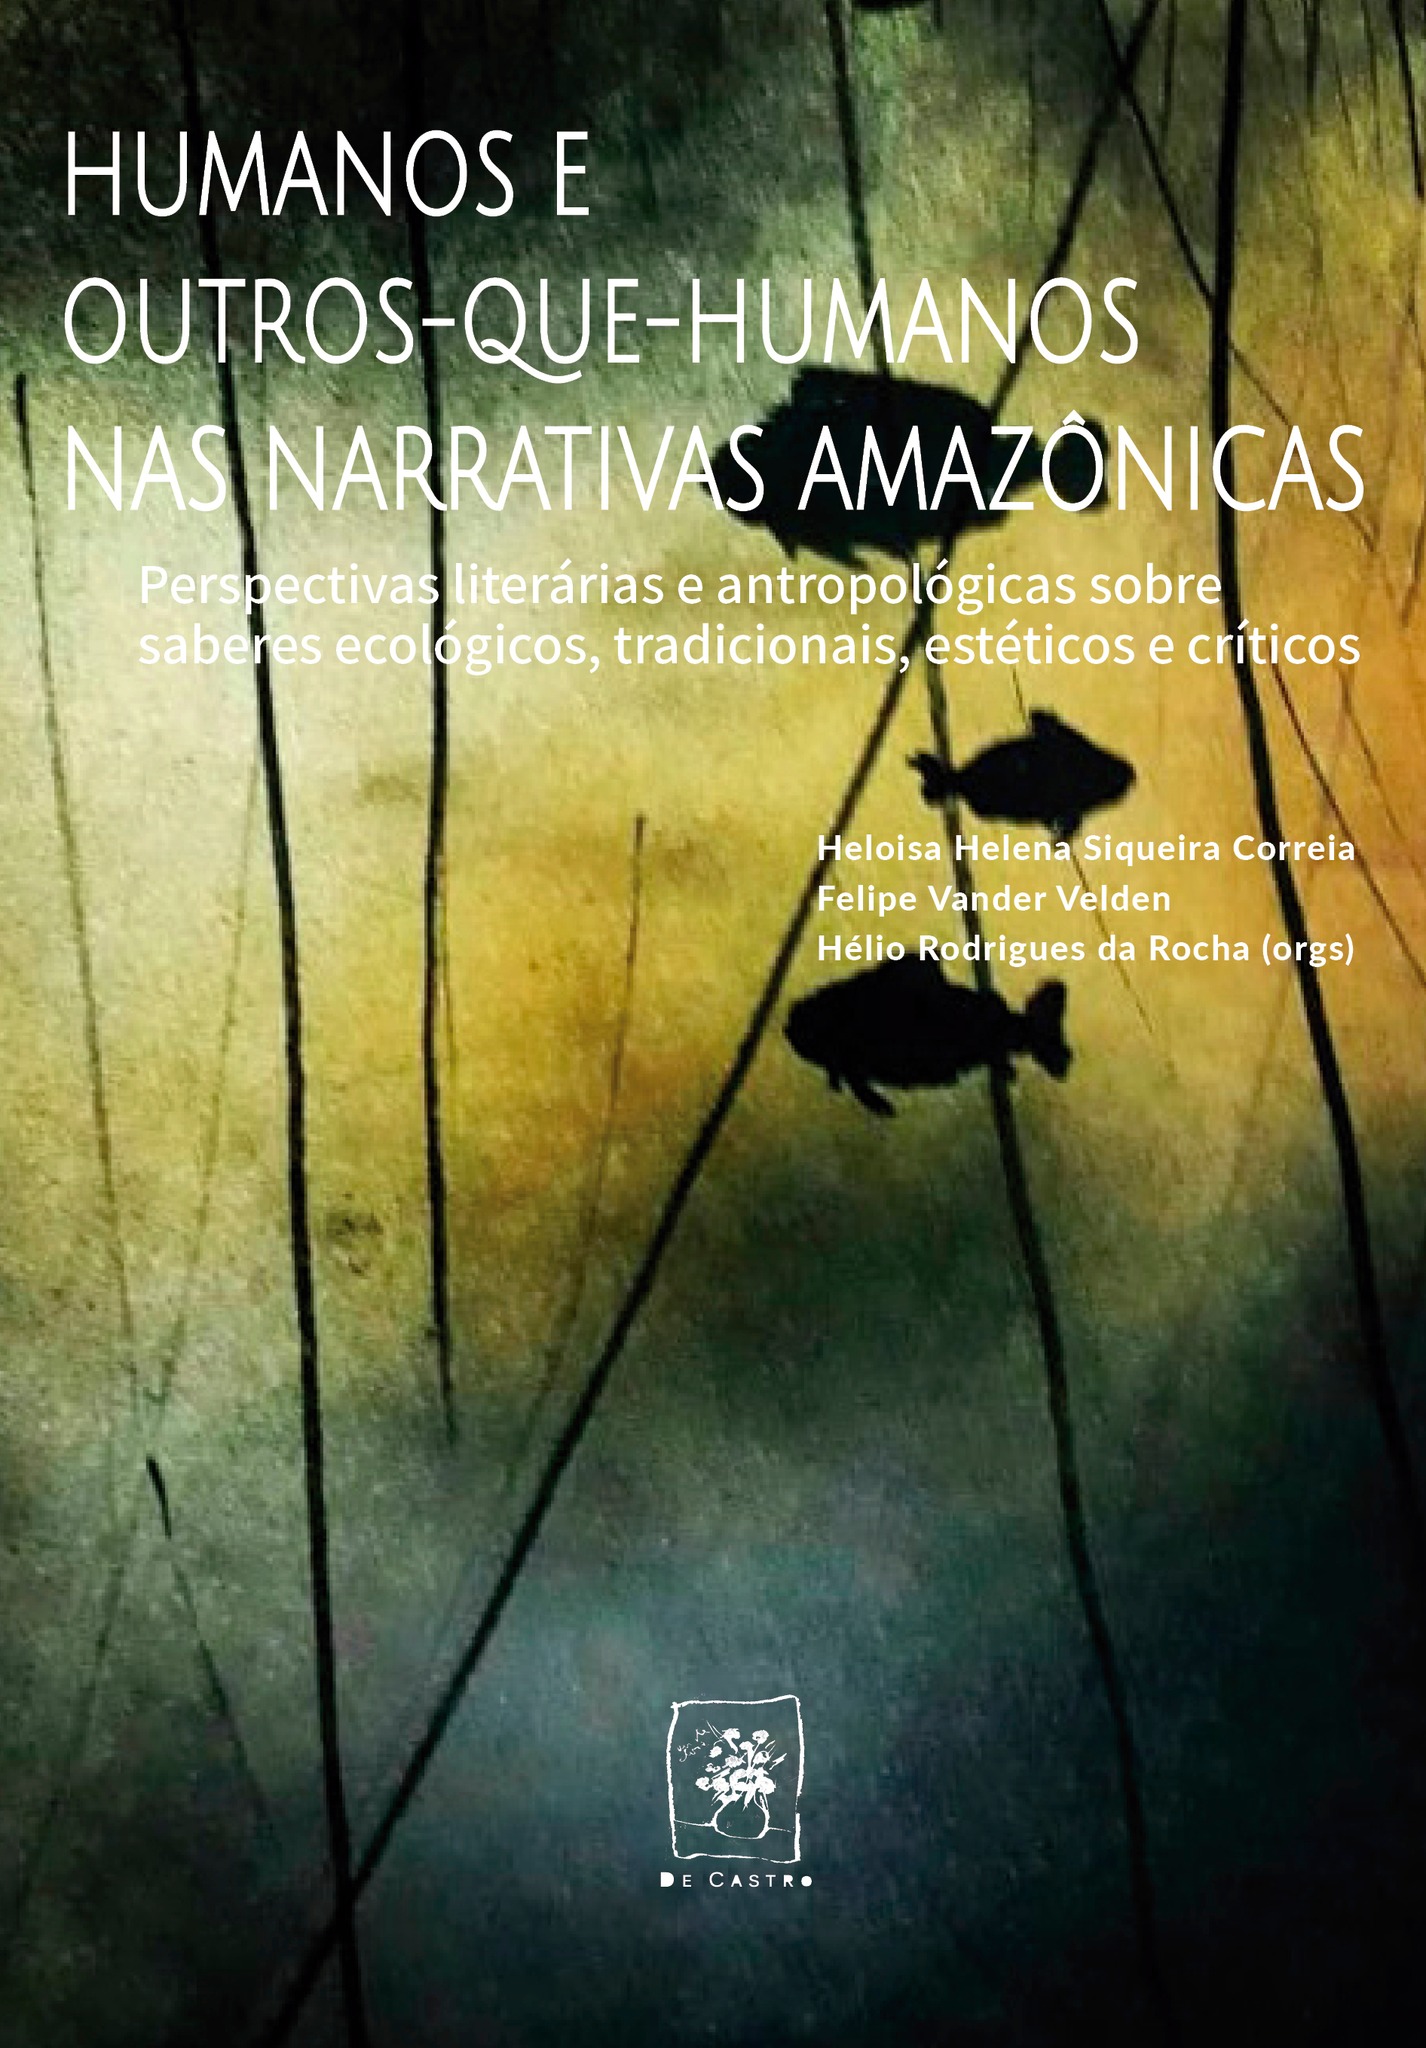 E_Book_1___Humanos_e_outros_que_humanos_nas_narrativas_amazonicas_1710302228